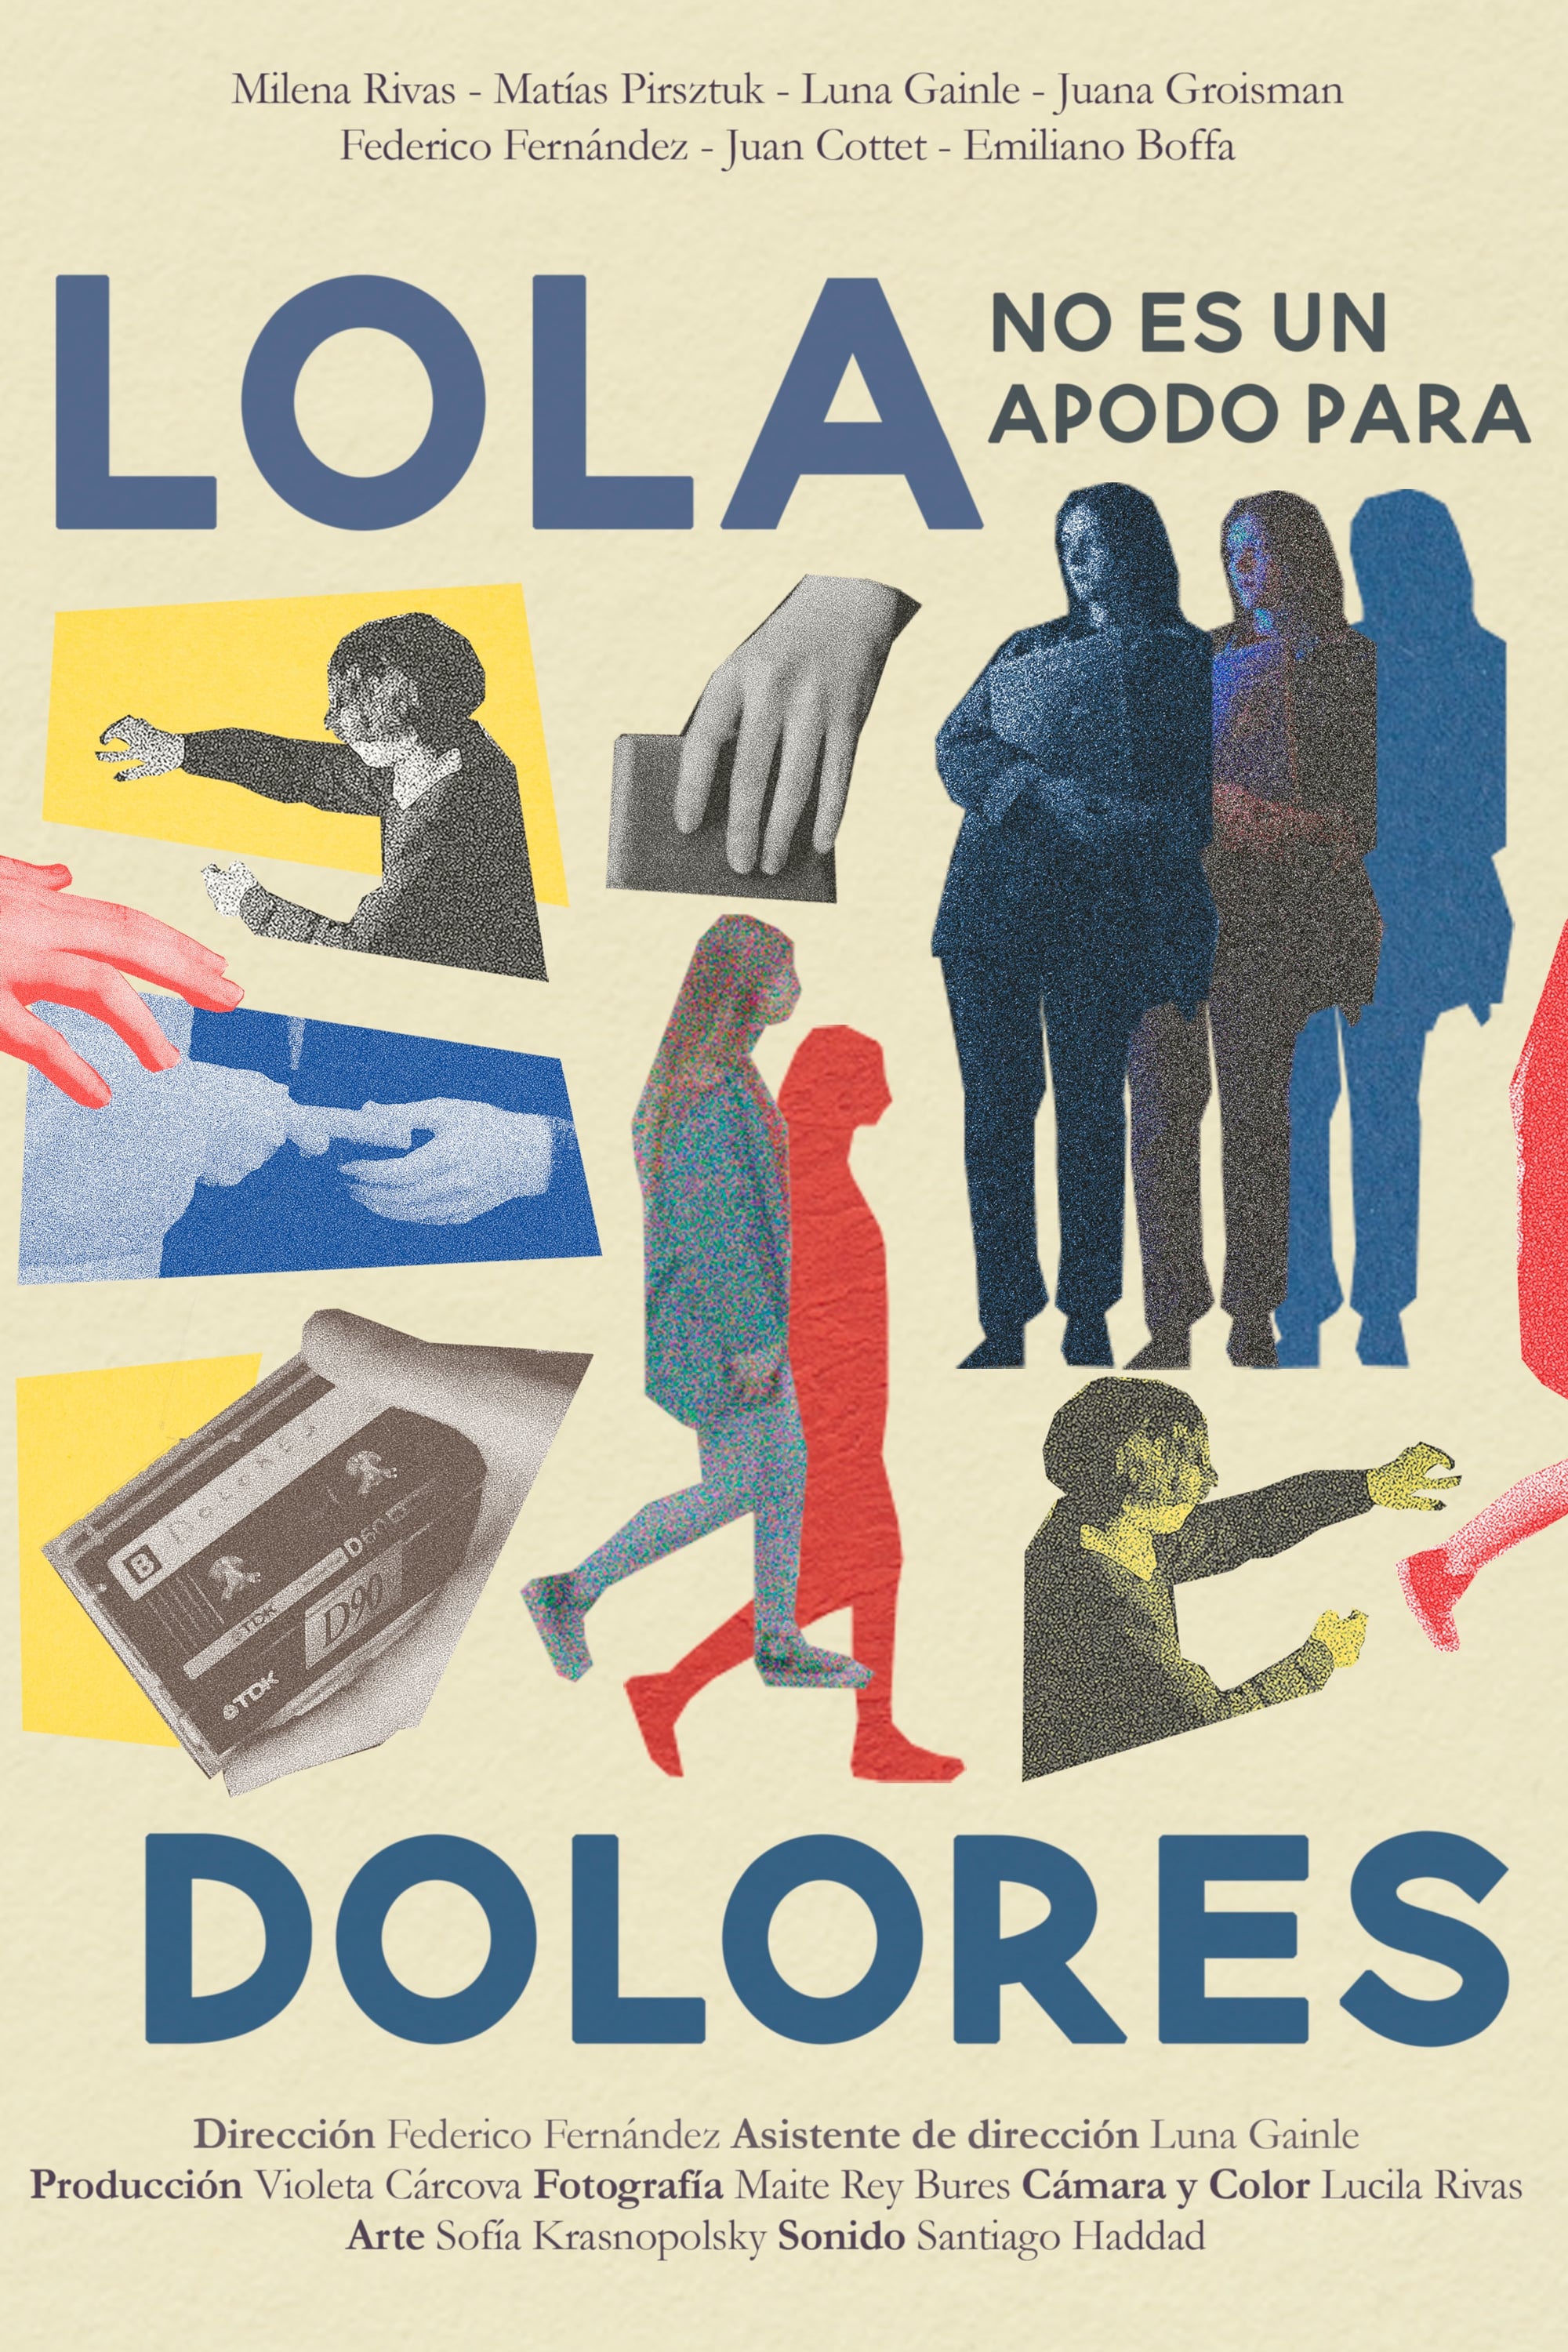 Lola no es un apodo para Dolores